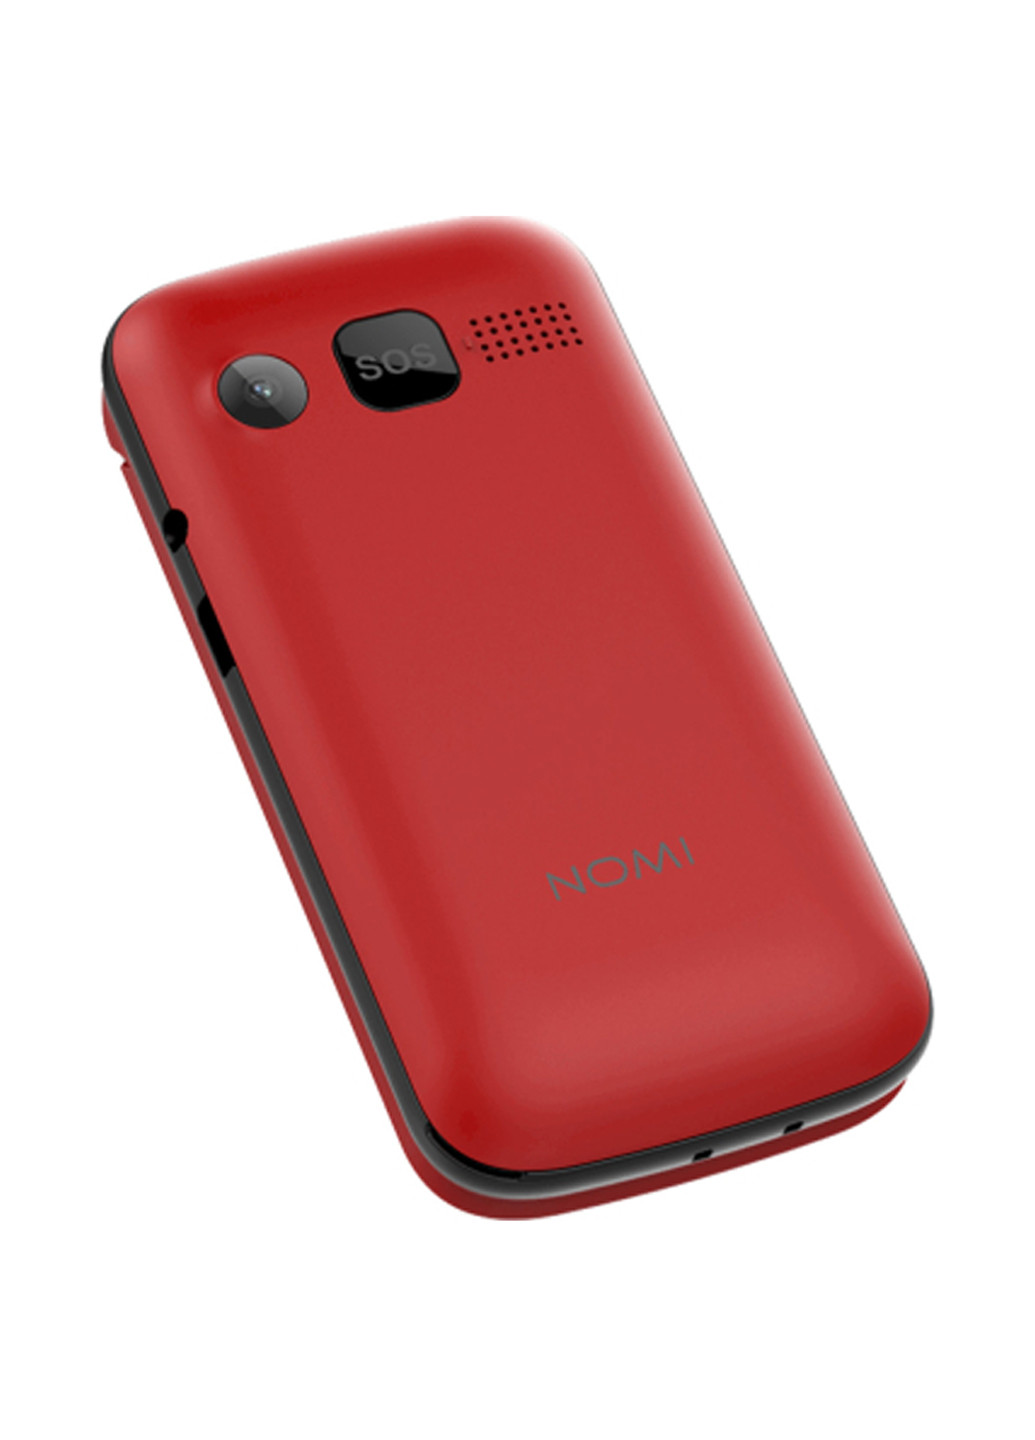 Мобильный телефон Nomi i246 red (134344421)